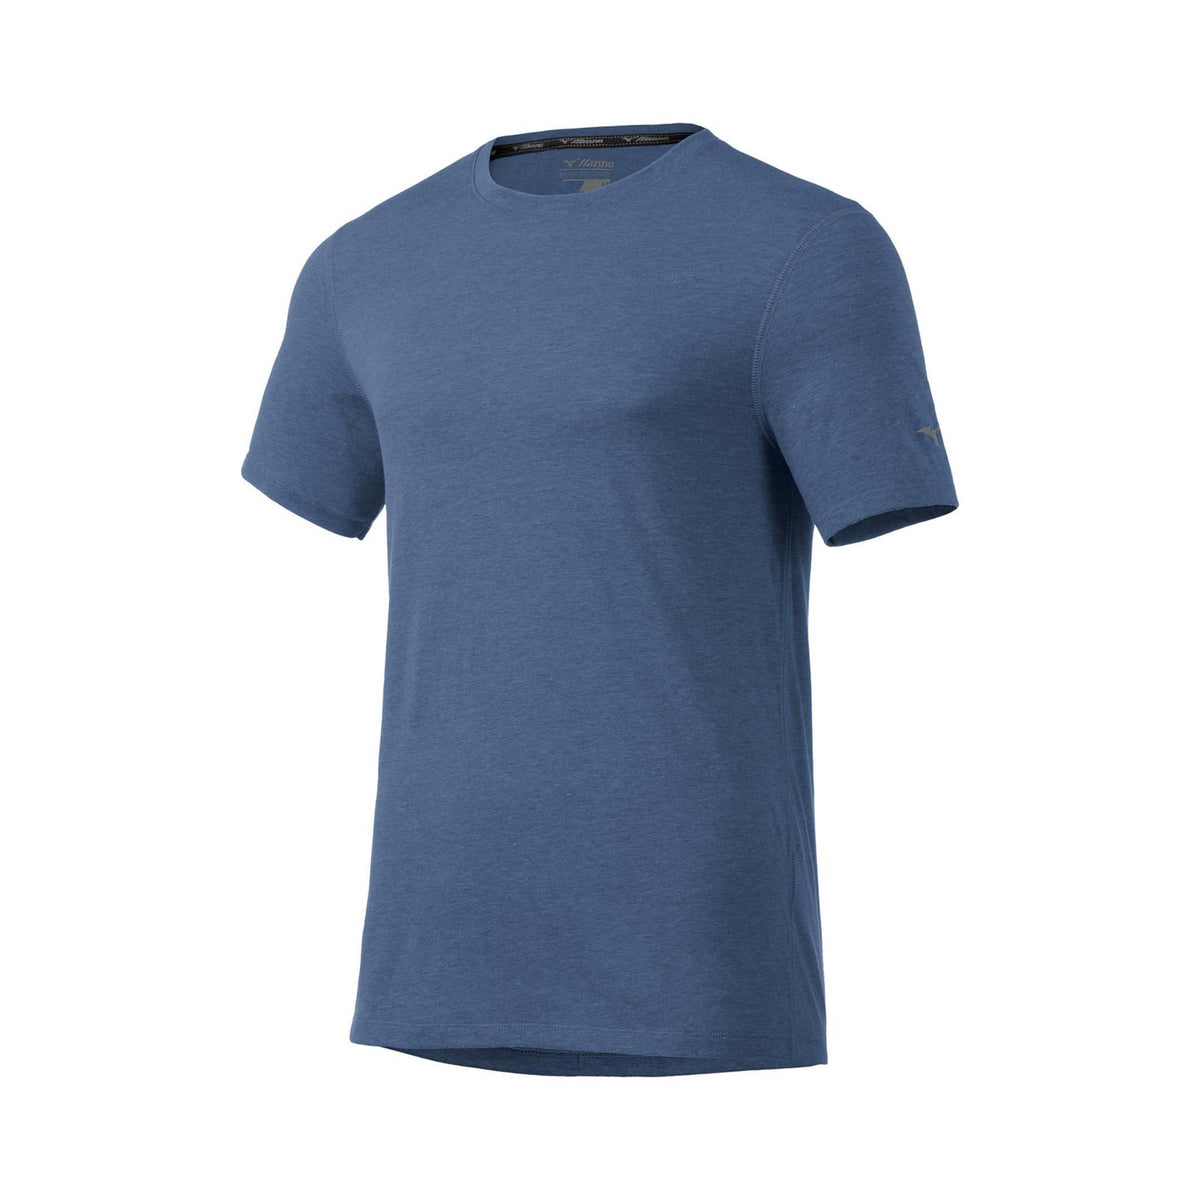 Mizuno Inspire T-shirt sport d&#39;entrainement manches courtes homme enseign blue